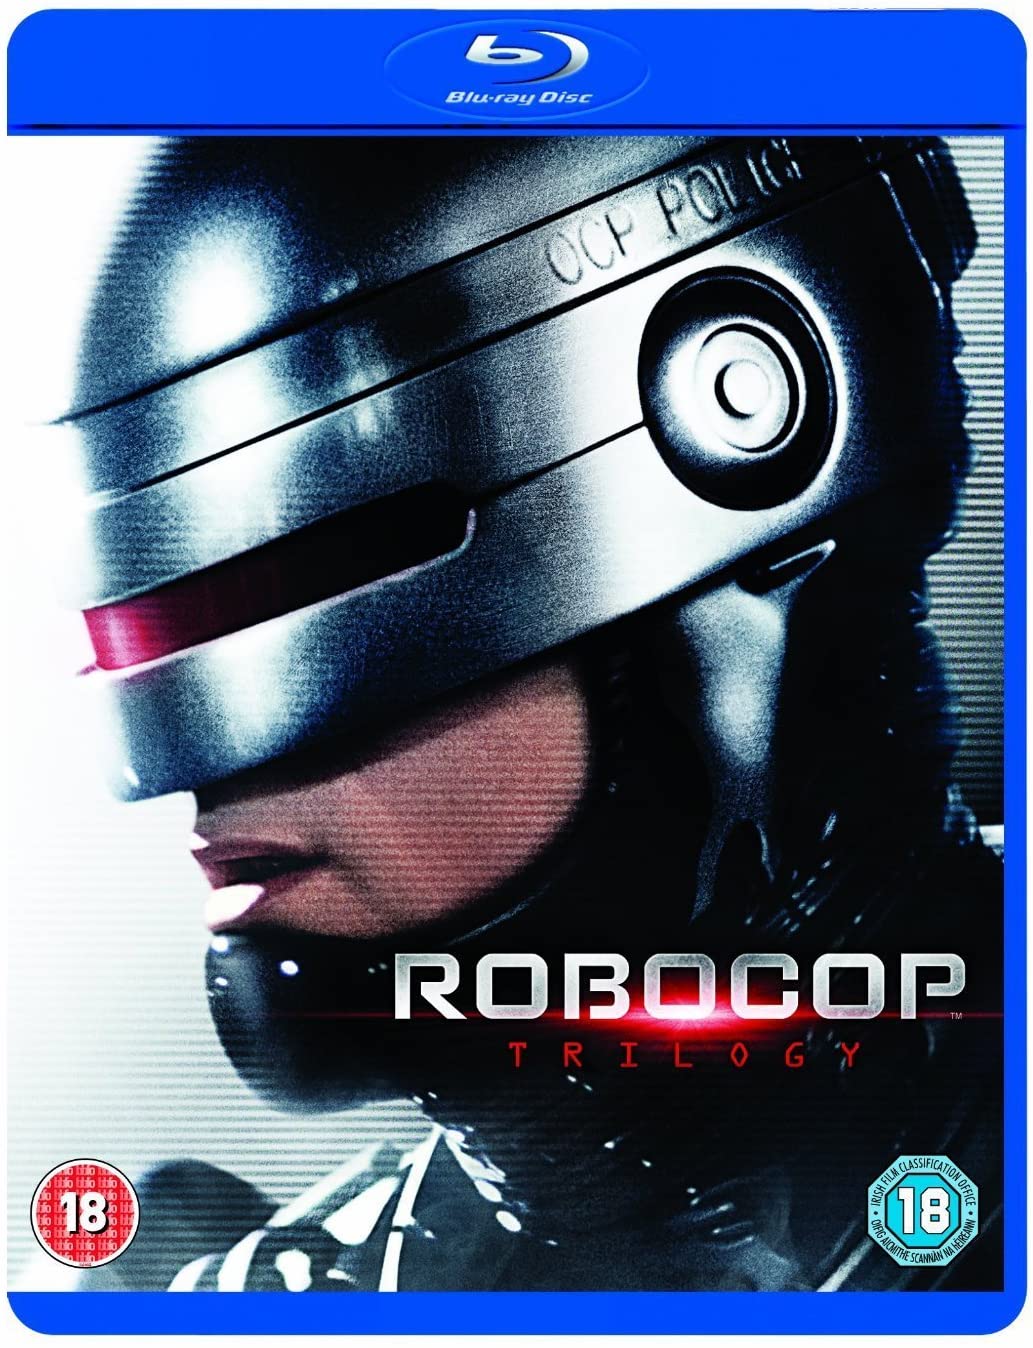 Robocop Trilogy [Remasterisé] [Blu-ray] [Région gratuite]